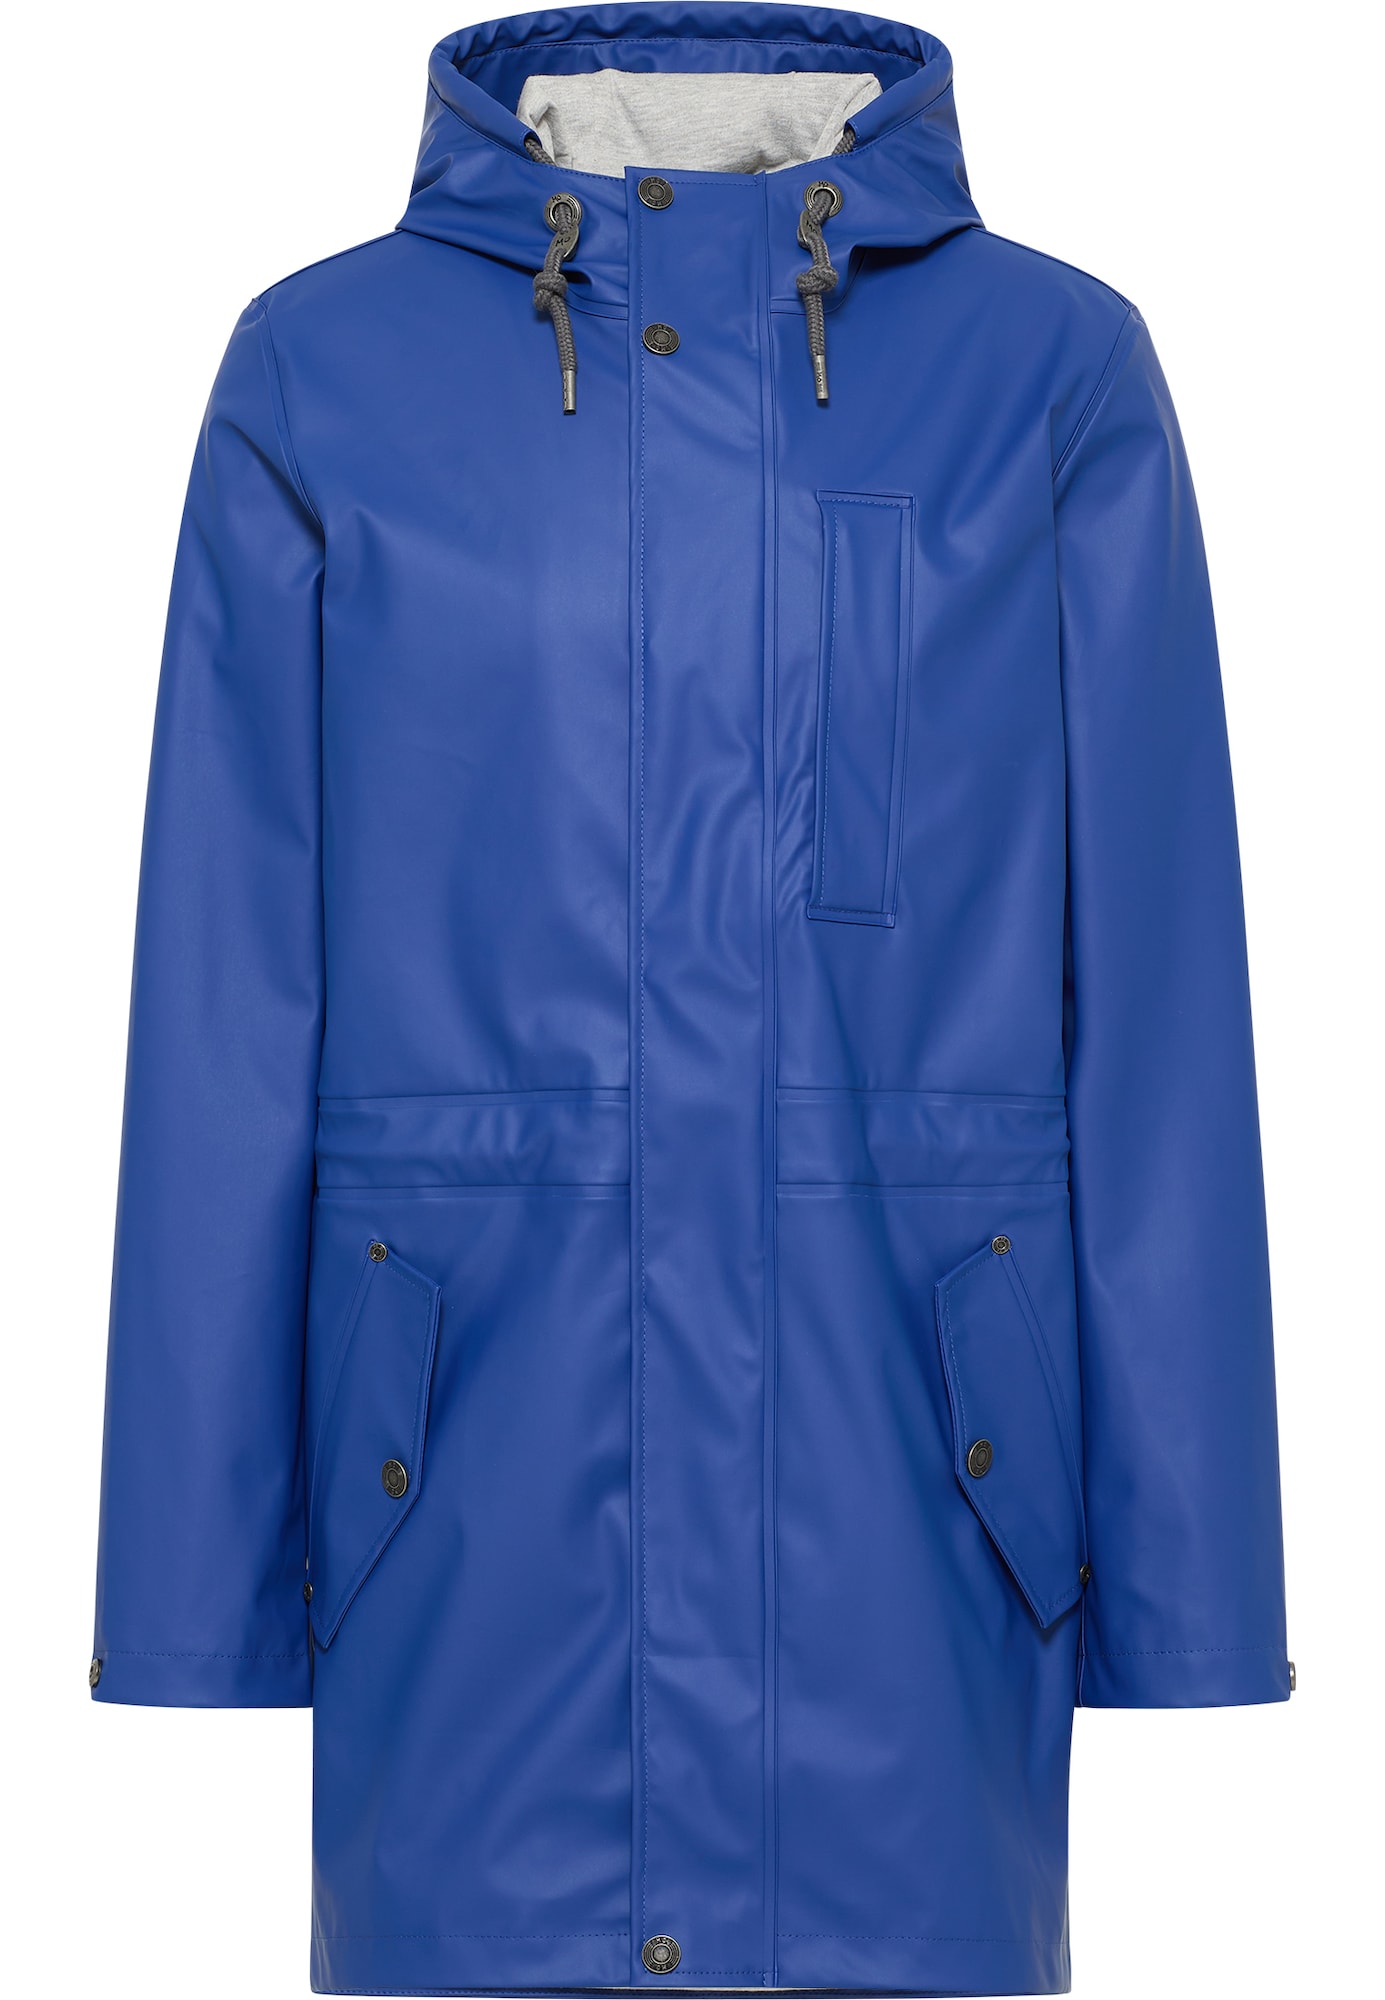 MO Funkcionalna jakna  modra